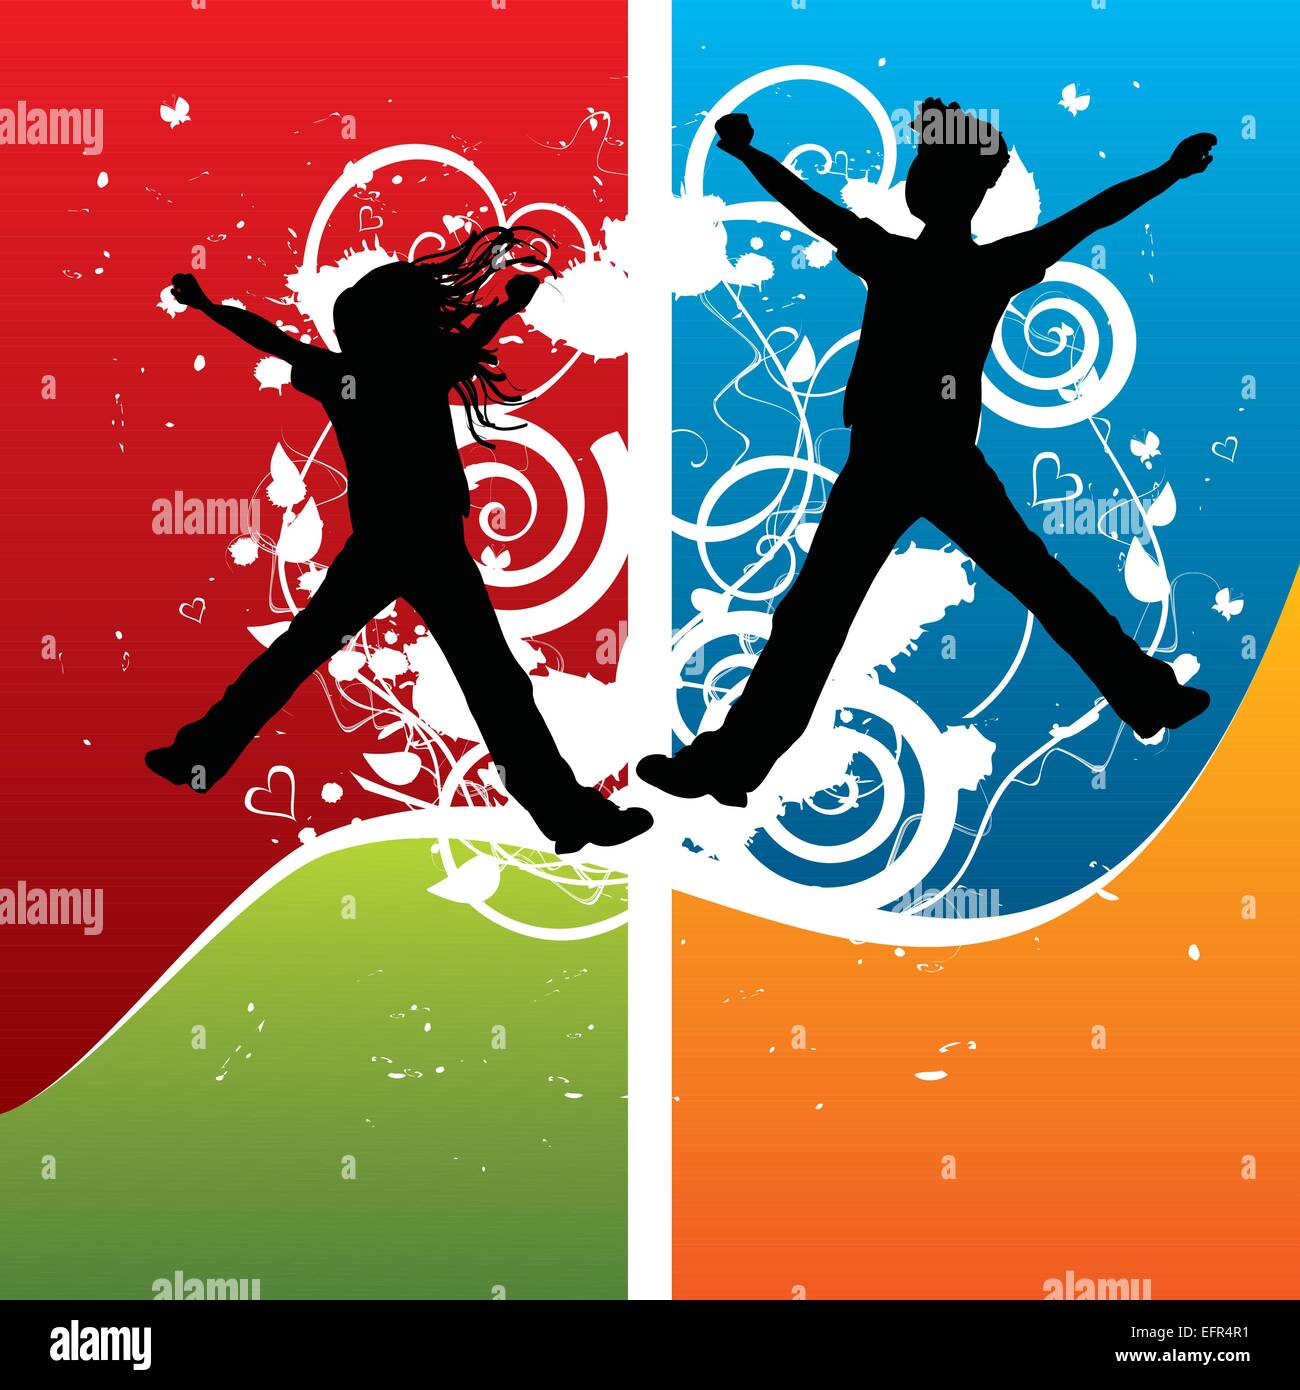 Jungen und Mädchen Silhouetten springen vor Freude, Vektor-illustration Stock Vektor